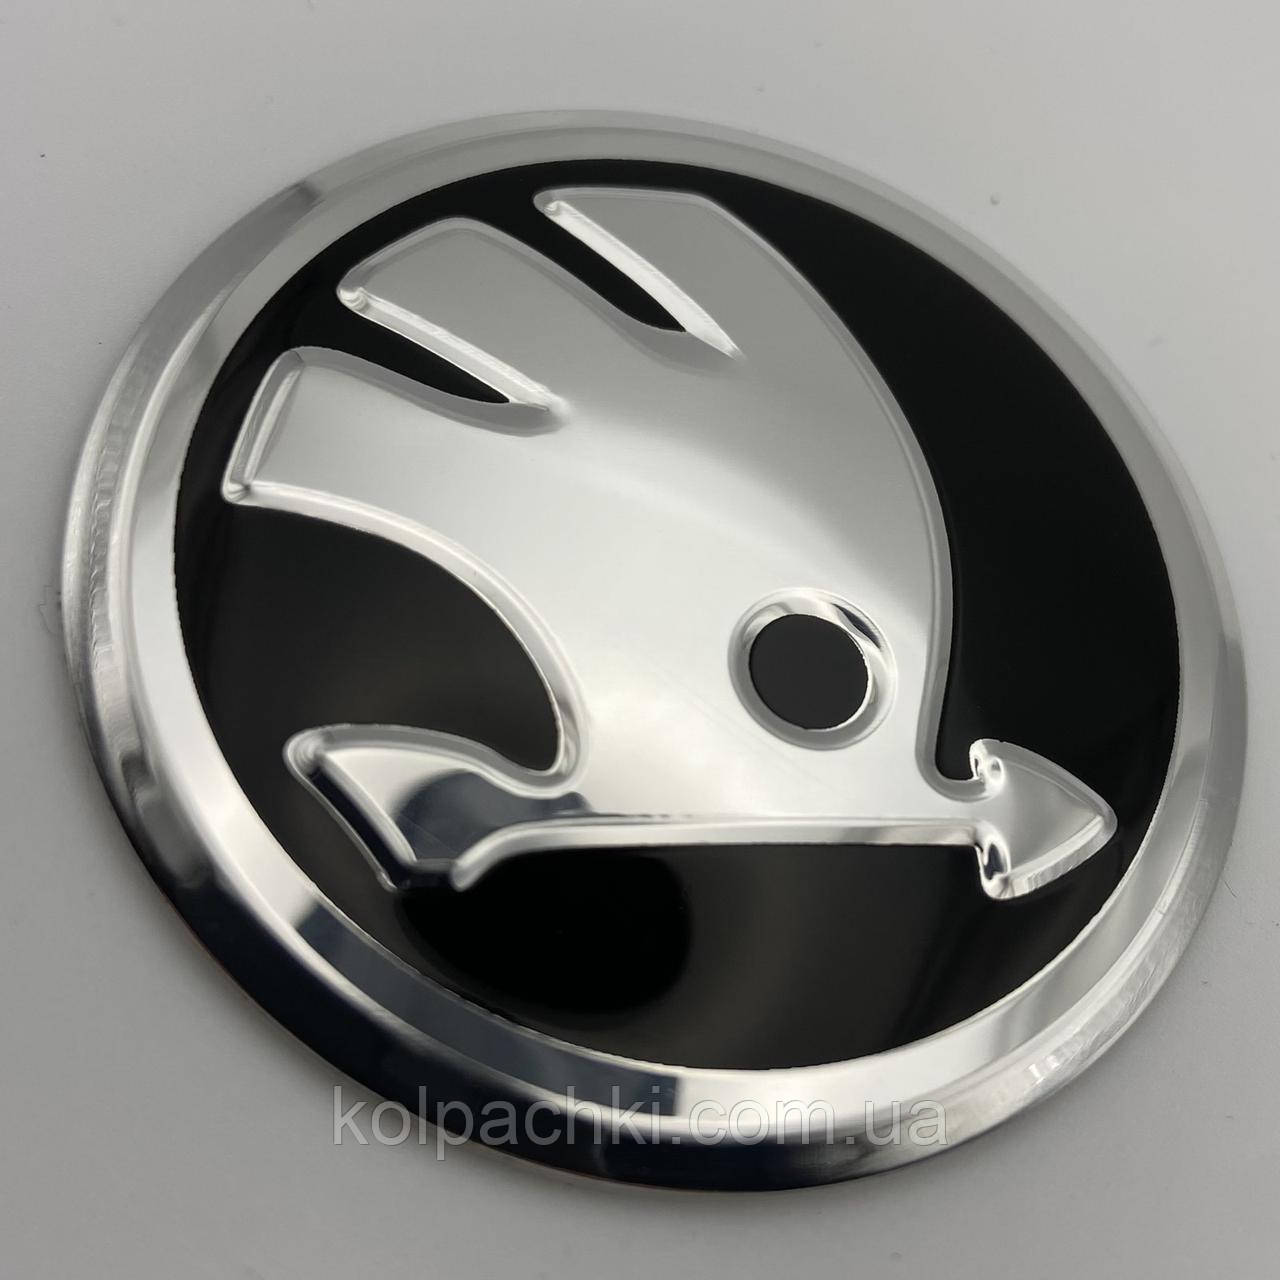 Наклейка алюмінієва з двостороннім скотчем із логотипом  Skoda Шкоду 75 мм металева